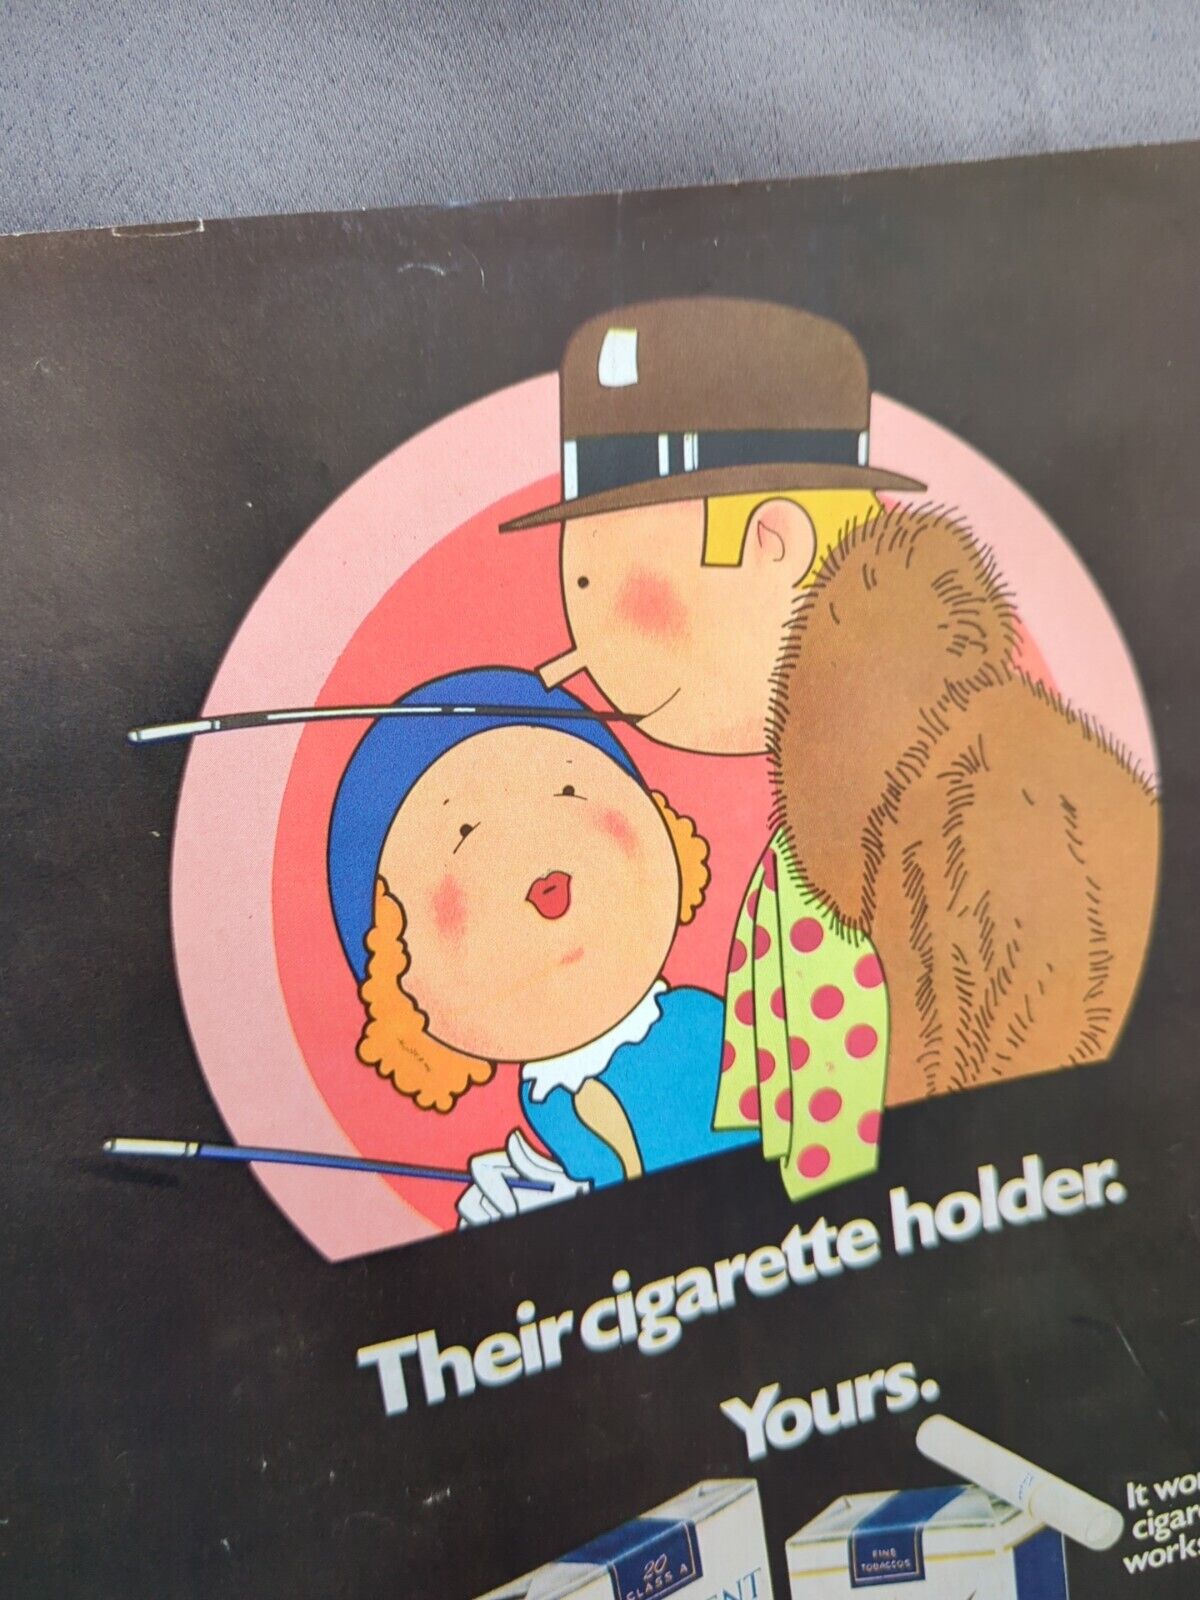 Parliament Cigarette Advertisement 1970s